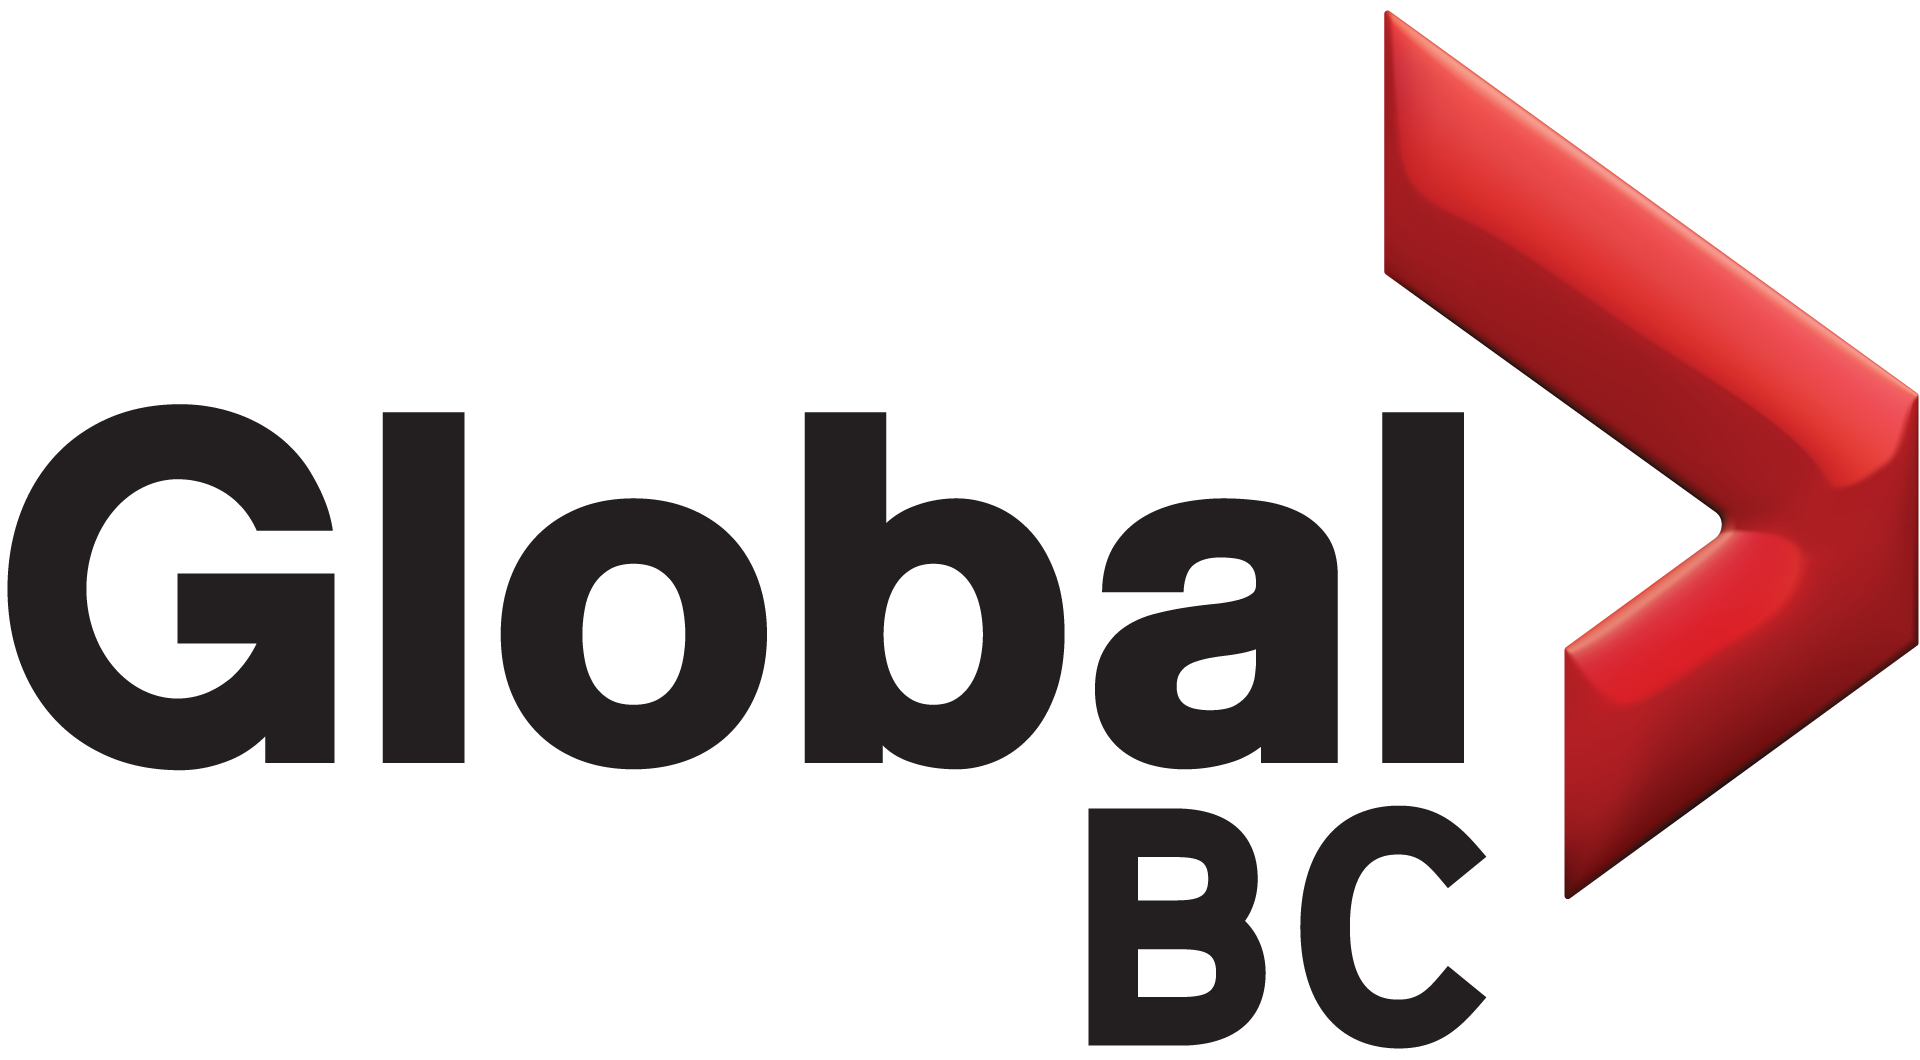 Global logo 2